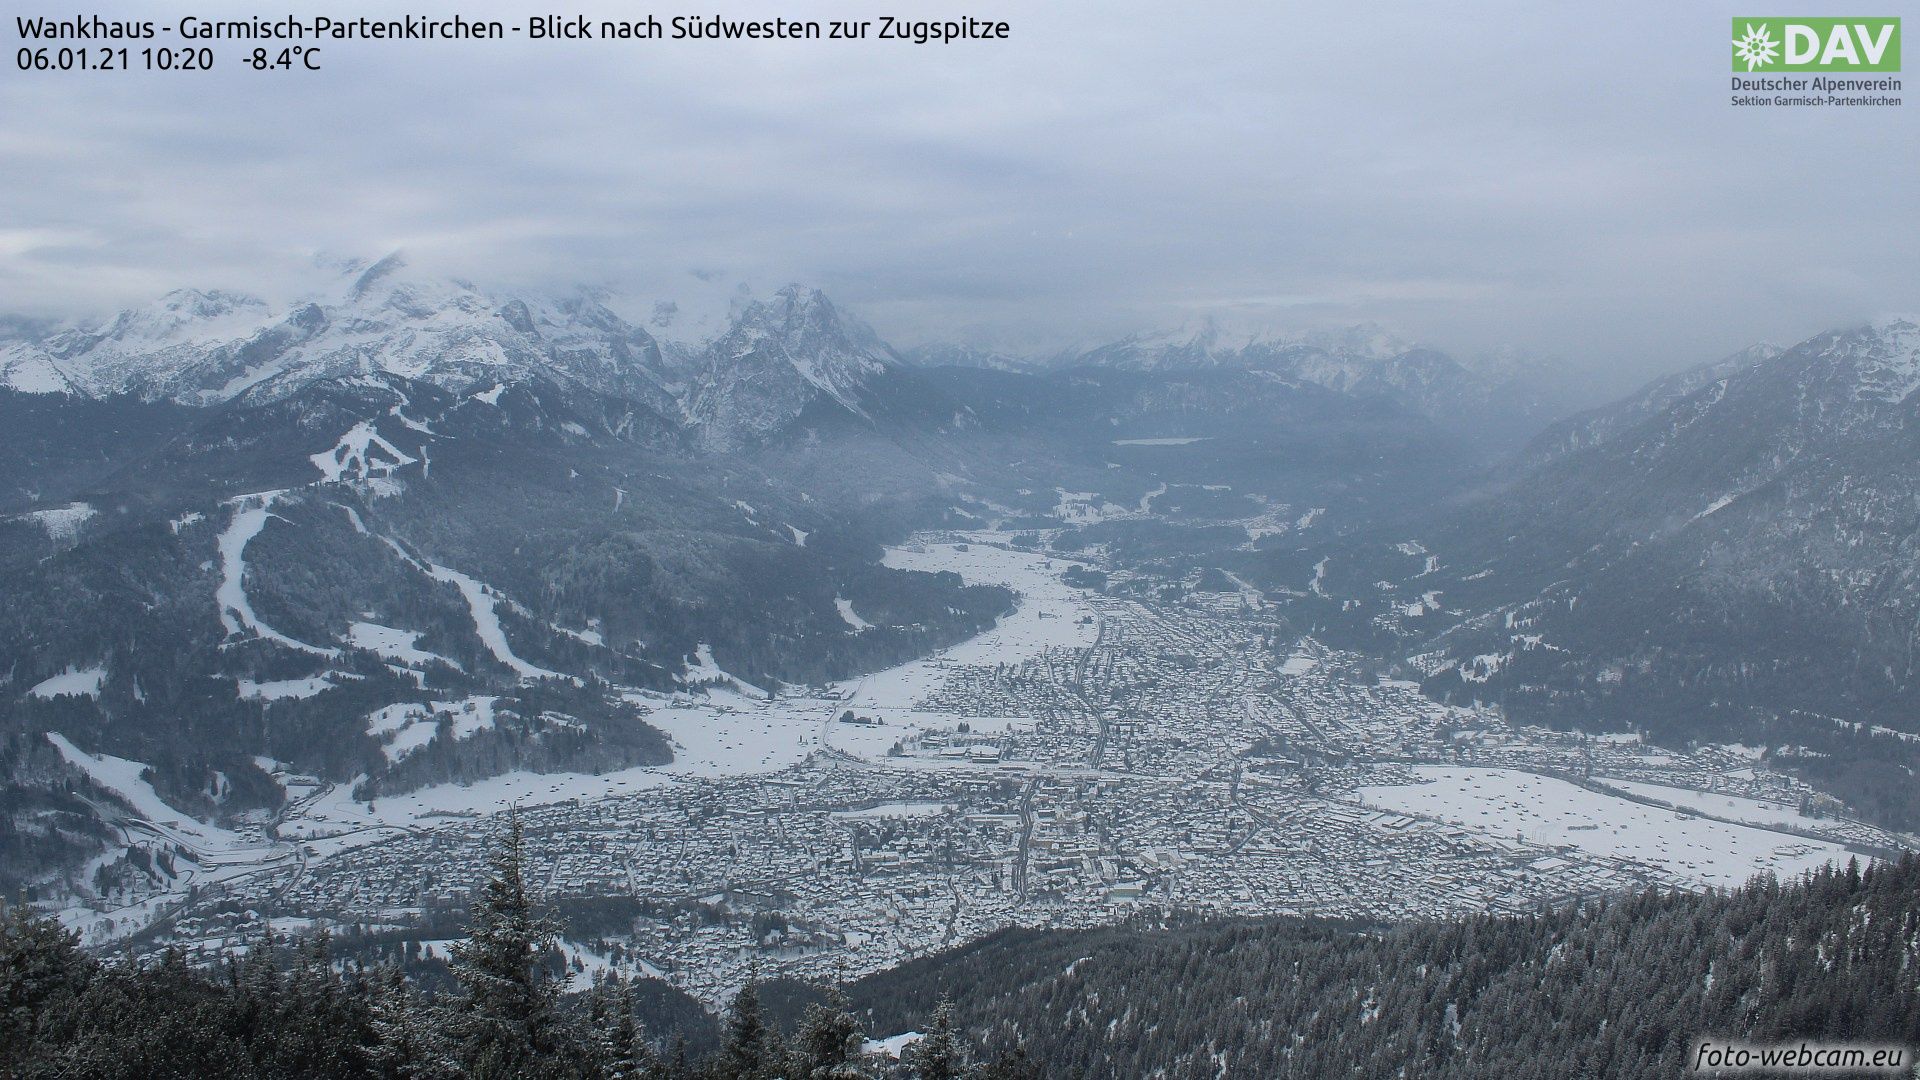 De sneeuwval heeft in vele delen van de Noordalpen (zoals hier in Garmisch) niet meer dan een laagje poedersuiker opgeleverd